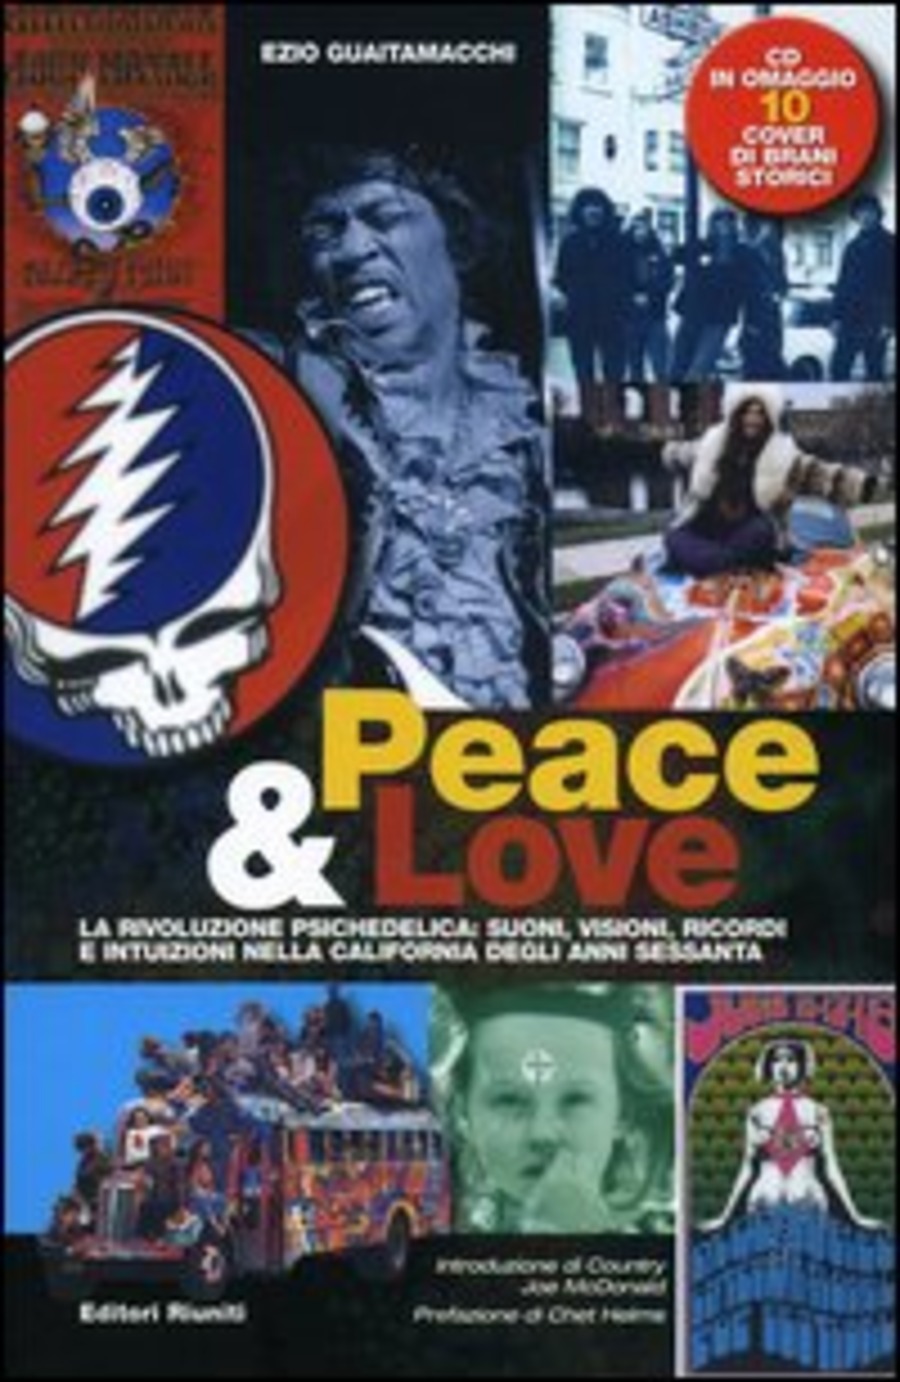 Peace & love. La rivoluzione psichedelica: suoni, visioni, ricordi e intuizioni nella California degli anni sessanta. Con CD Audio